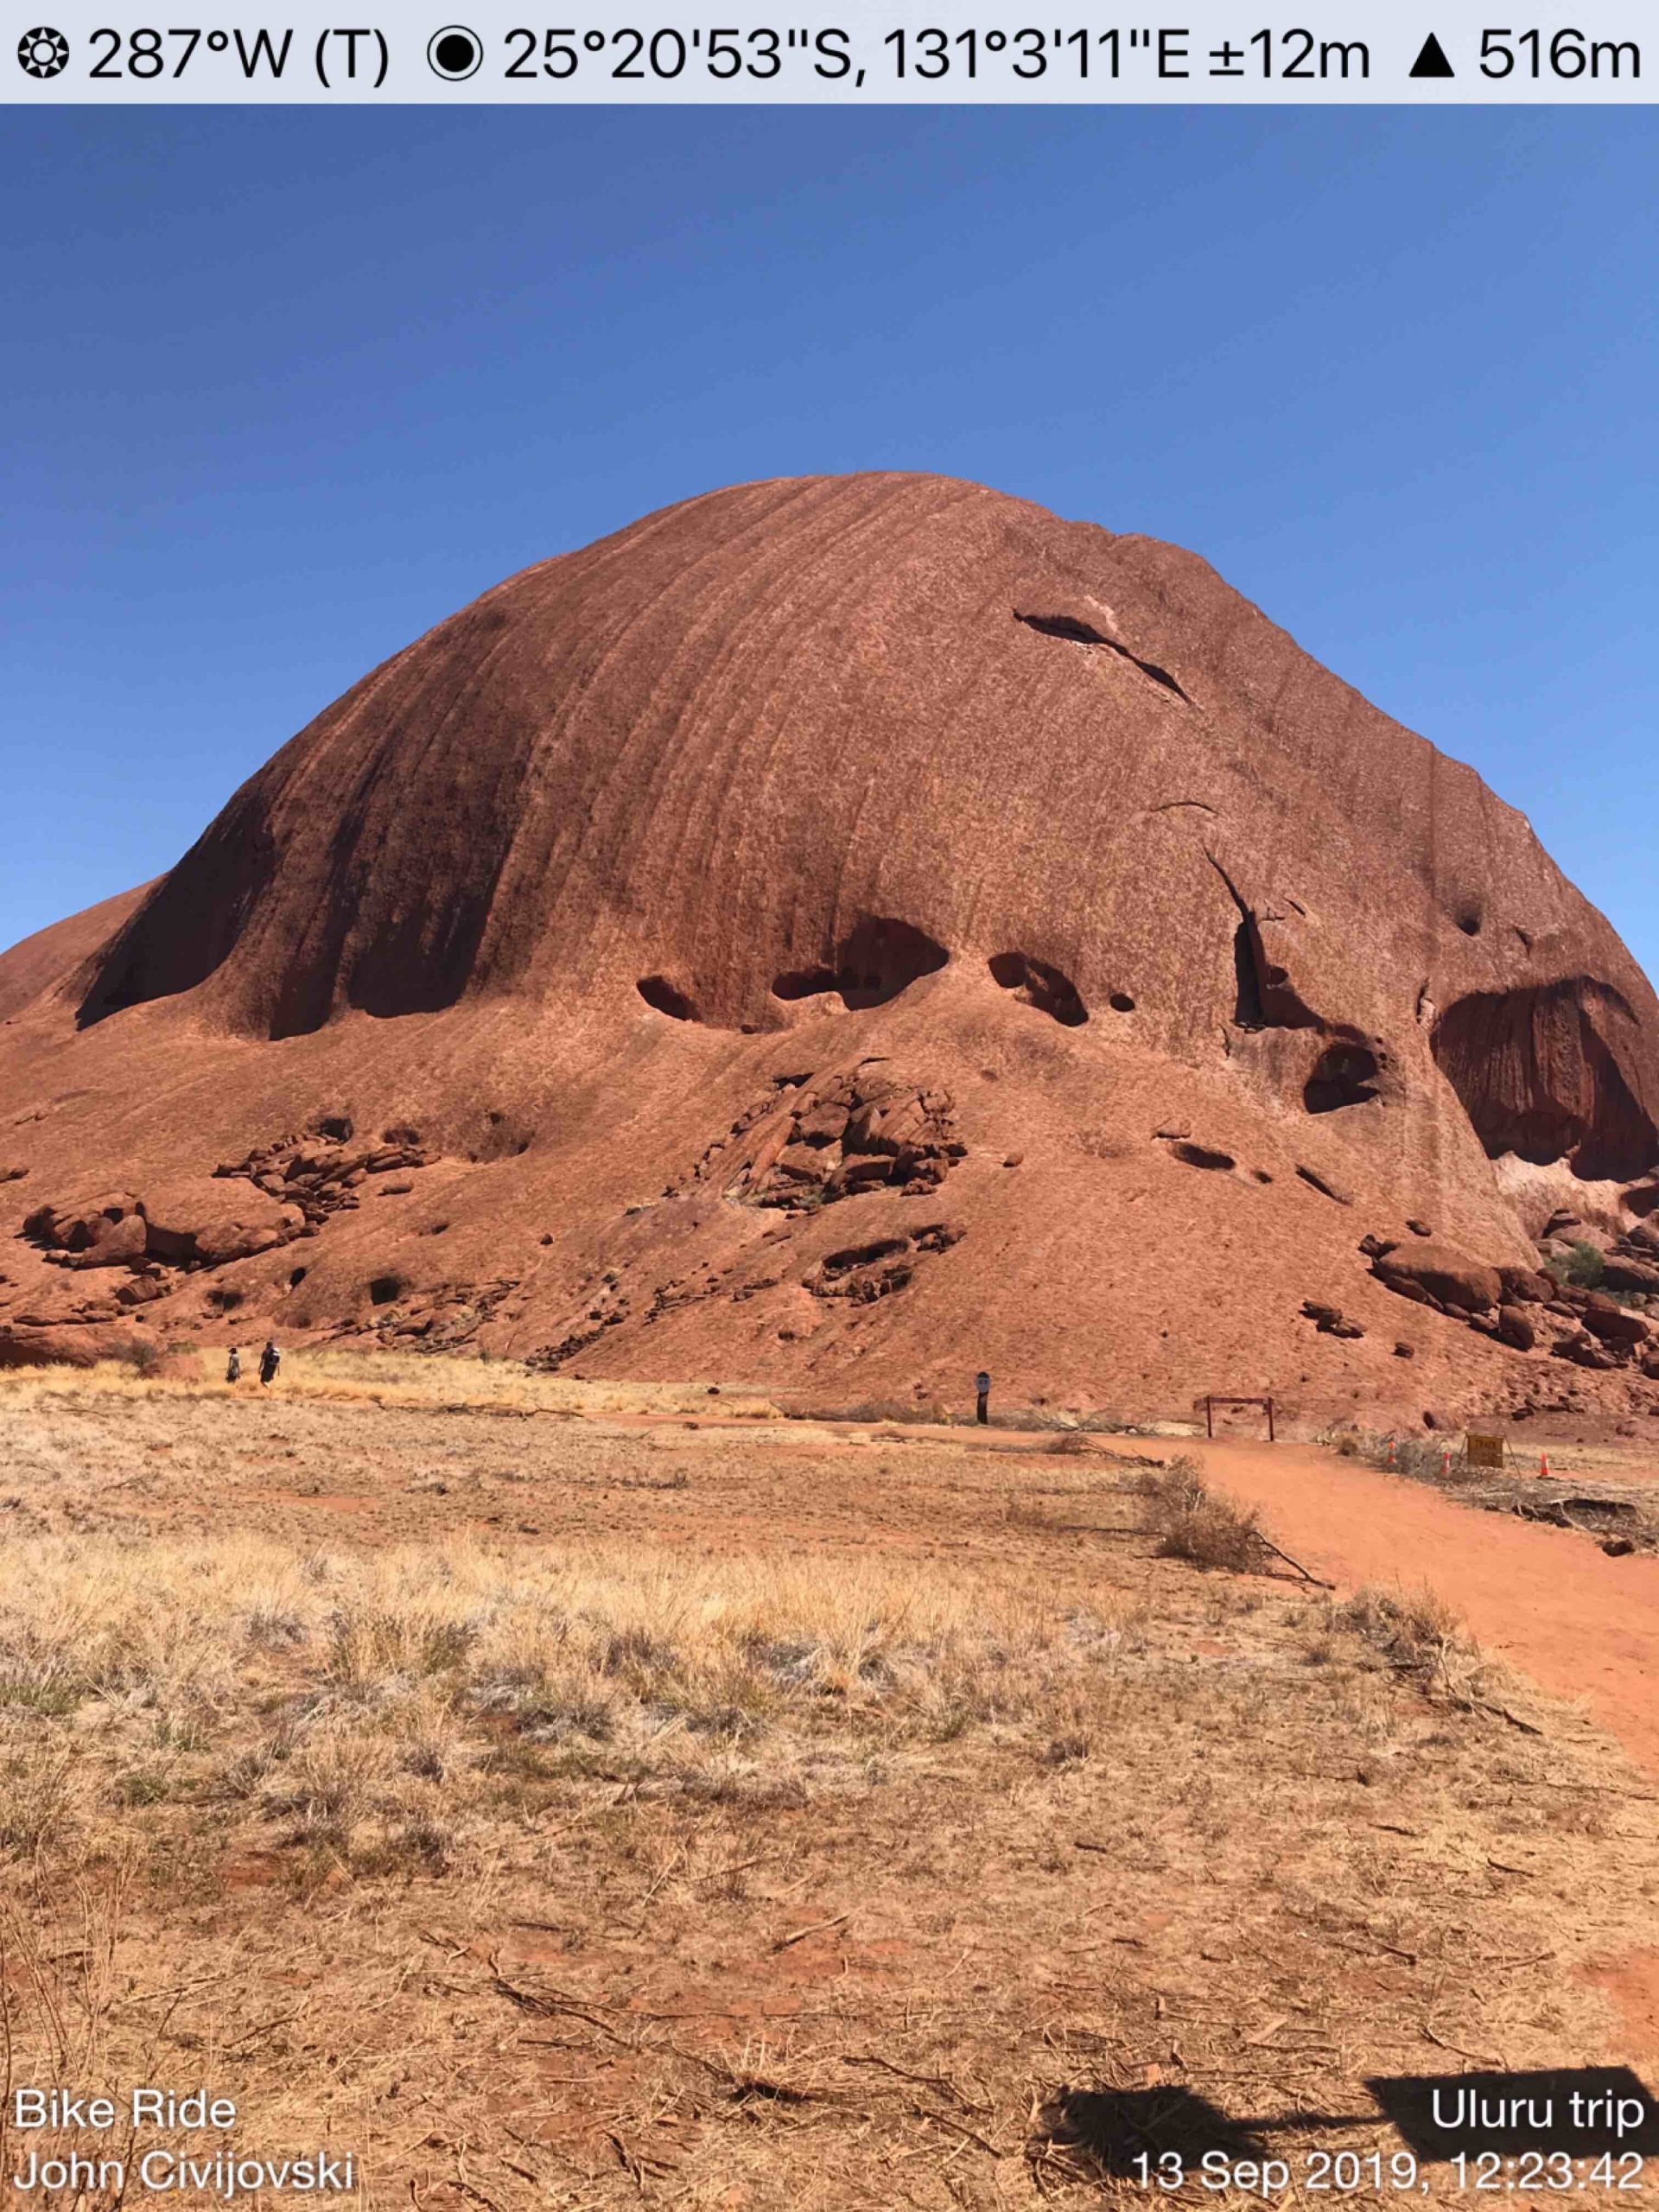 Rock formation Uluru.